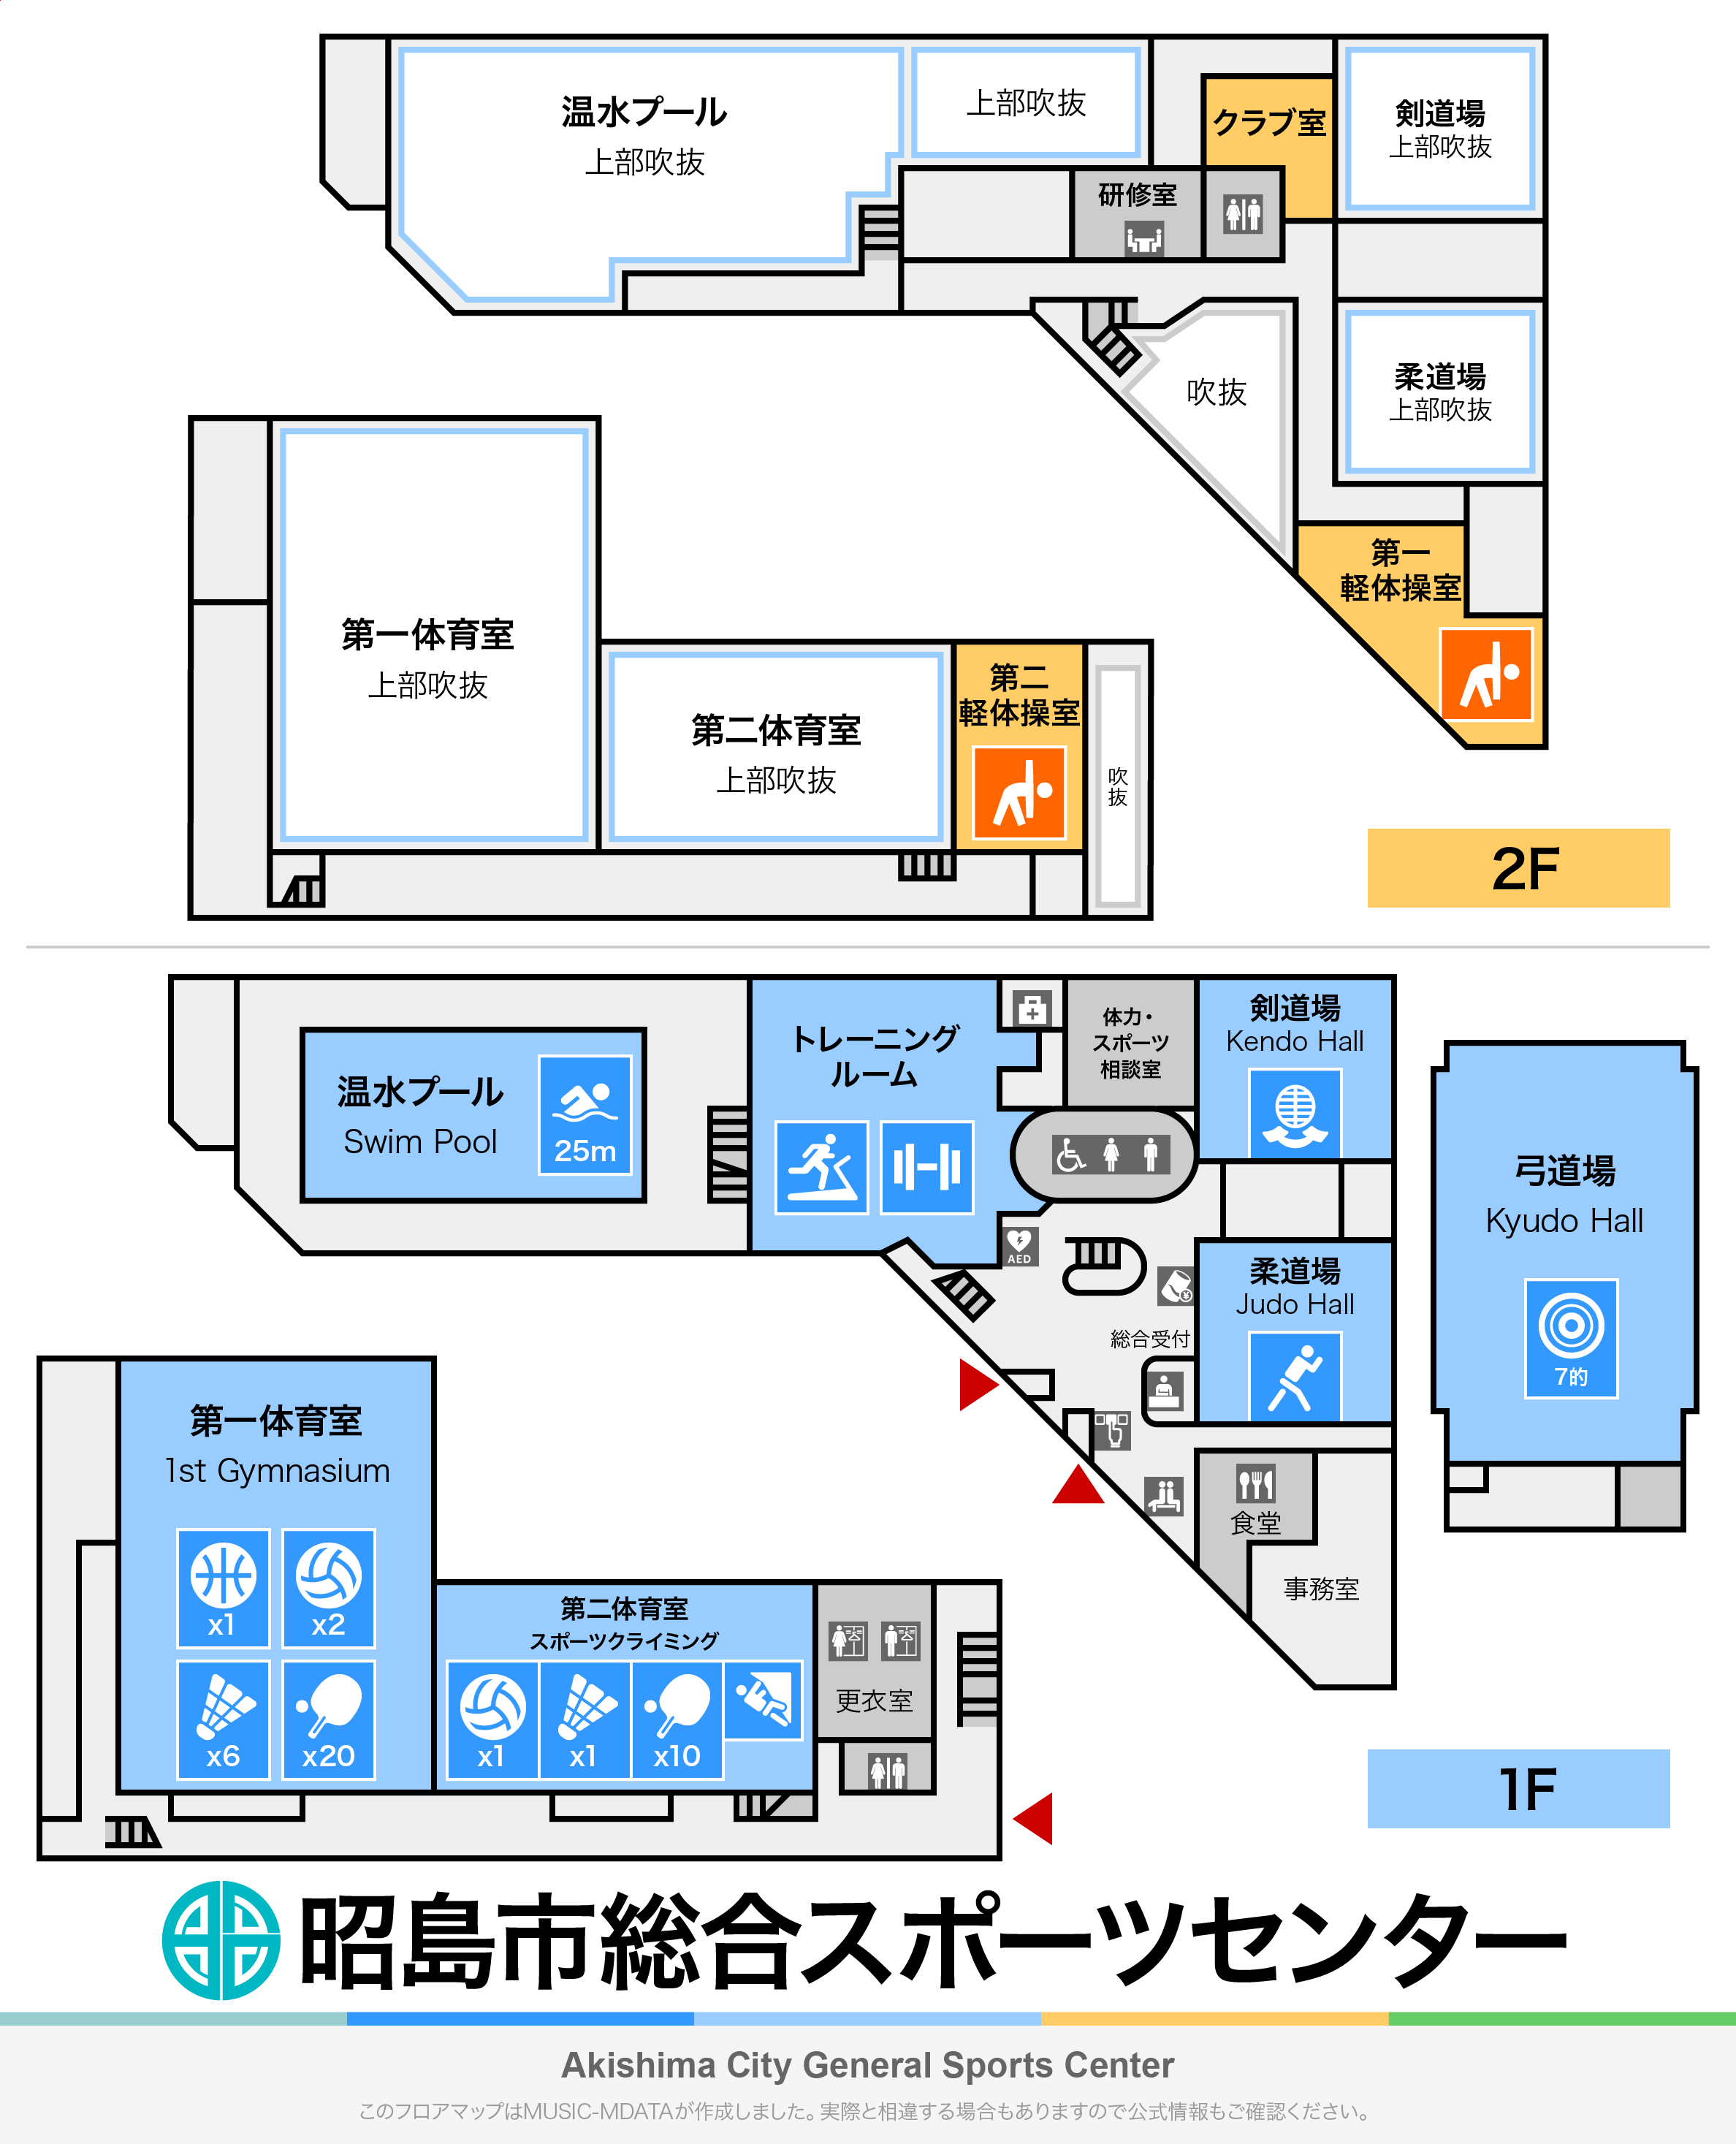 昭島市総合スポーツセンターのフロアマップ・体育館